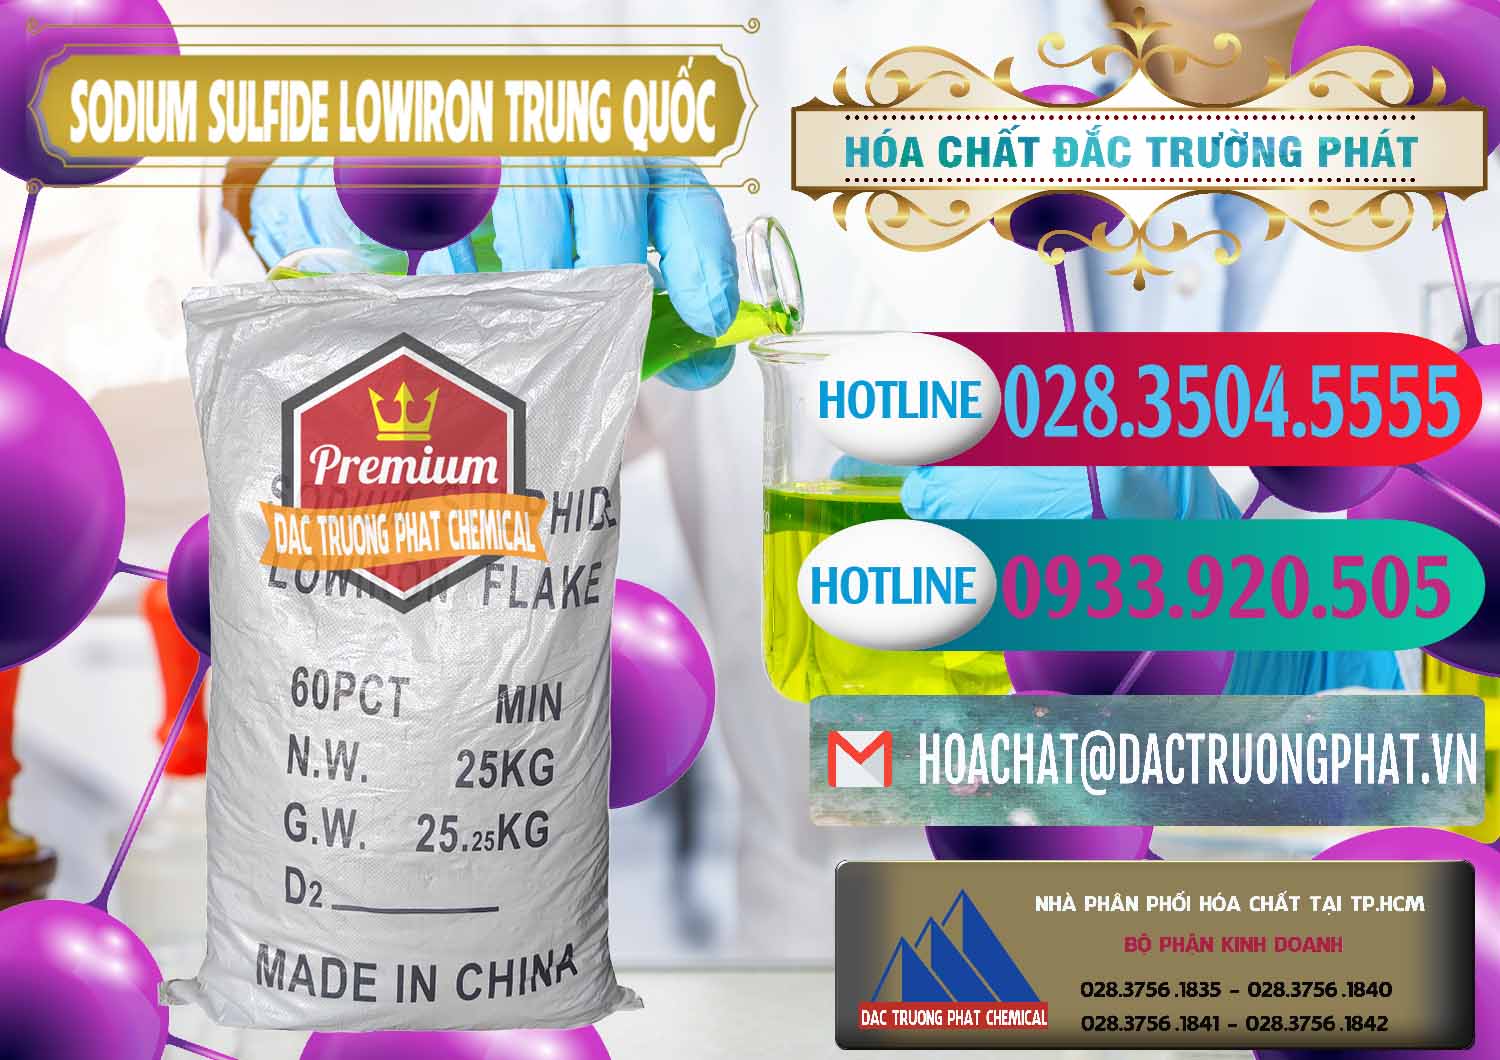 Chuyên bán ( cung ứng ) Sodium Sulfide NA2S – Đá Thối Lowiron Trung Quốc China - 0227 - Chuyên cung cấp và phân phối hóa chất tại TP.HCM - truongphat.vn